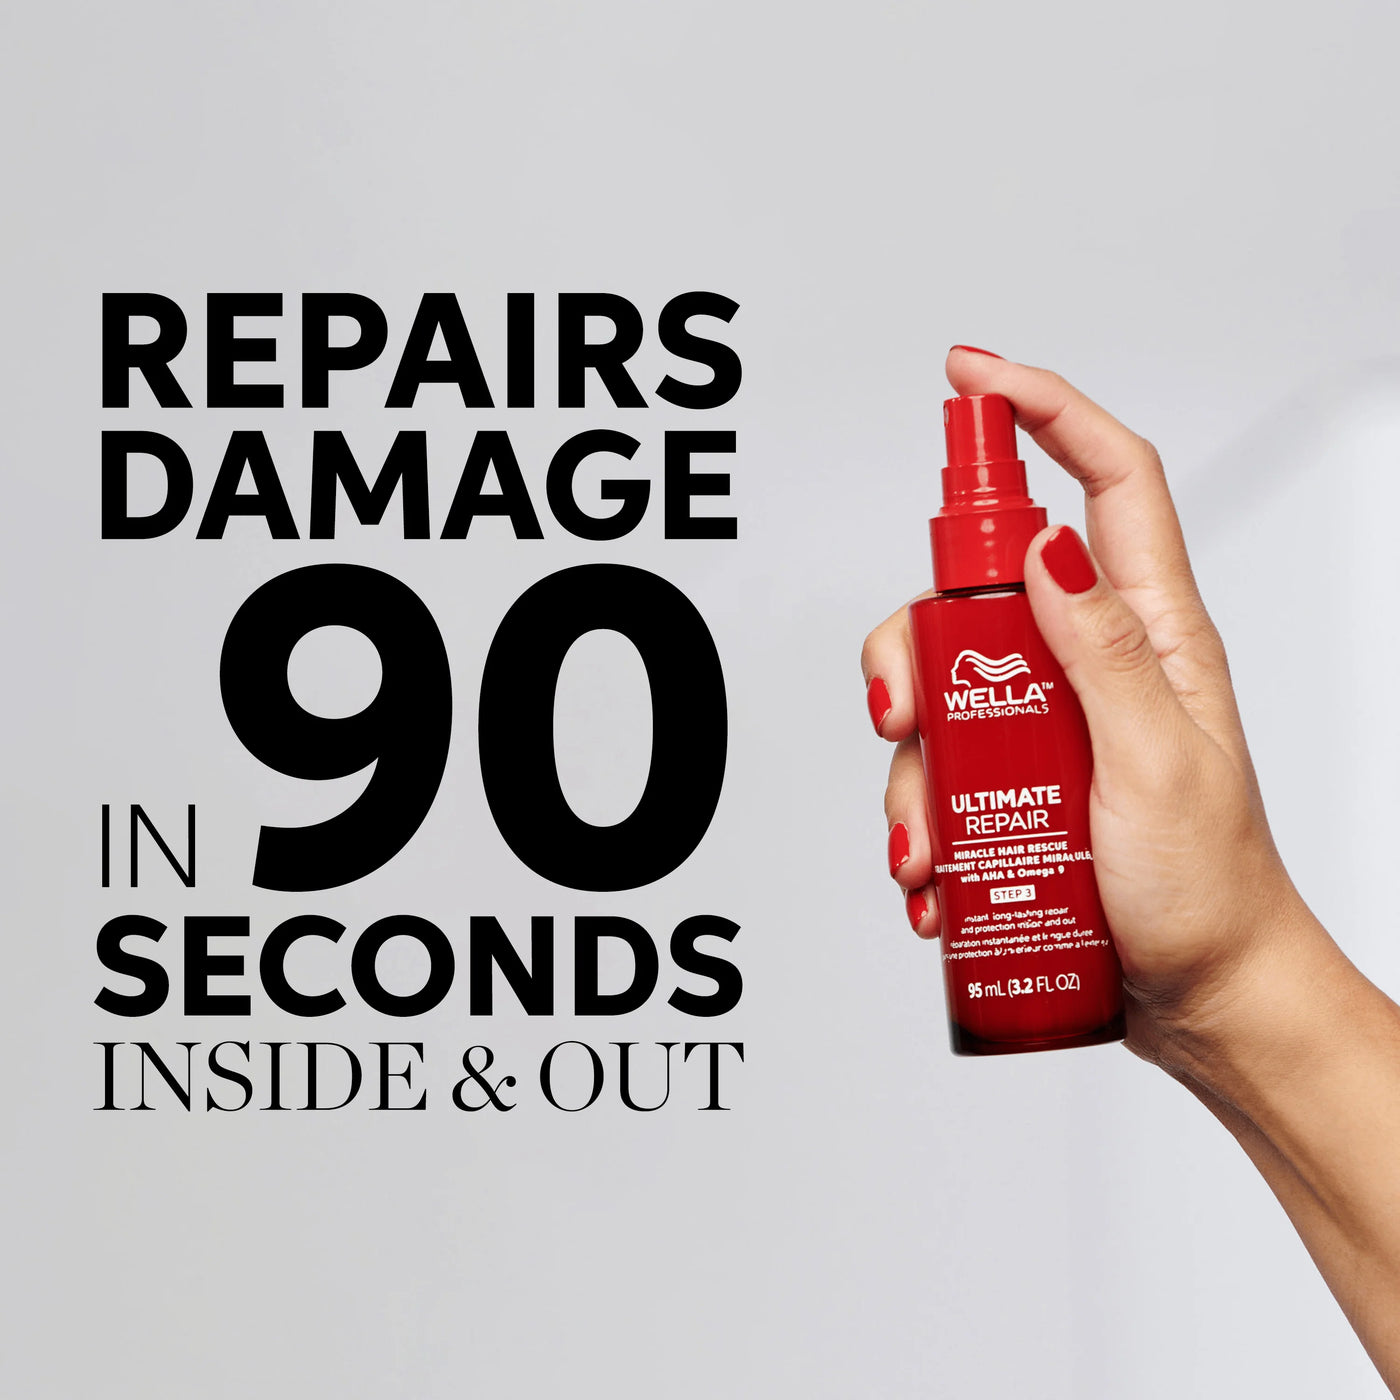 Wella Ultimate Repair in 90 seconds